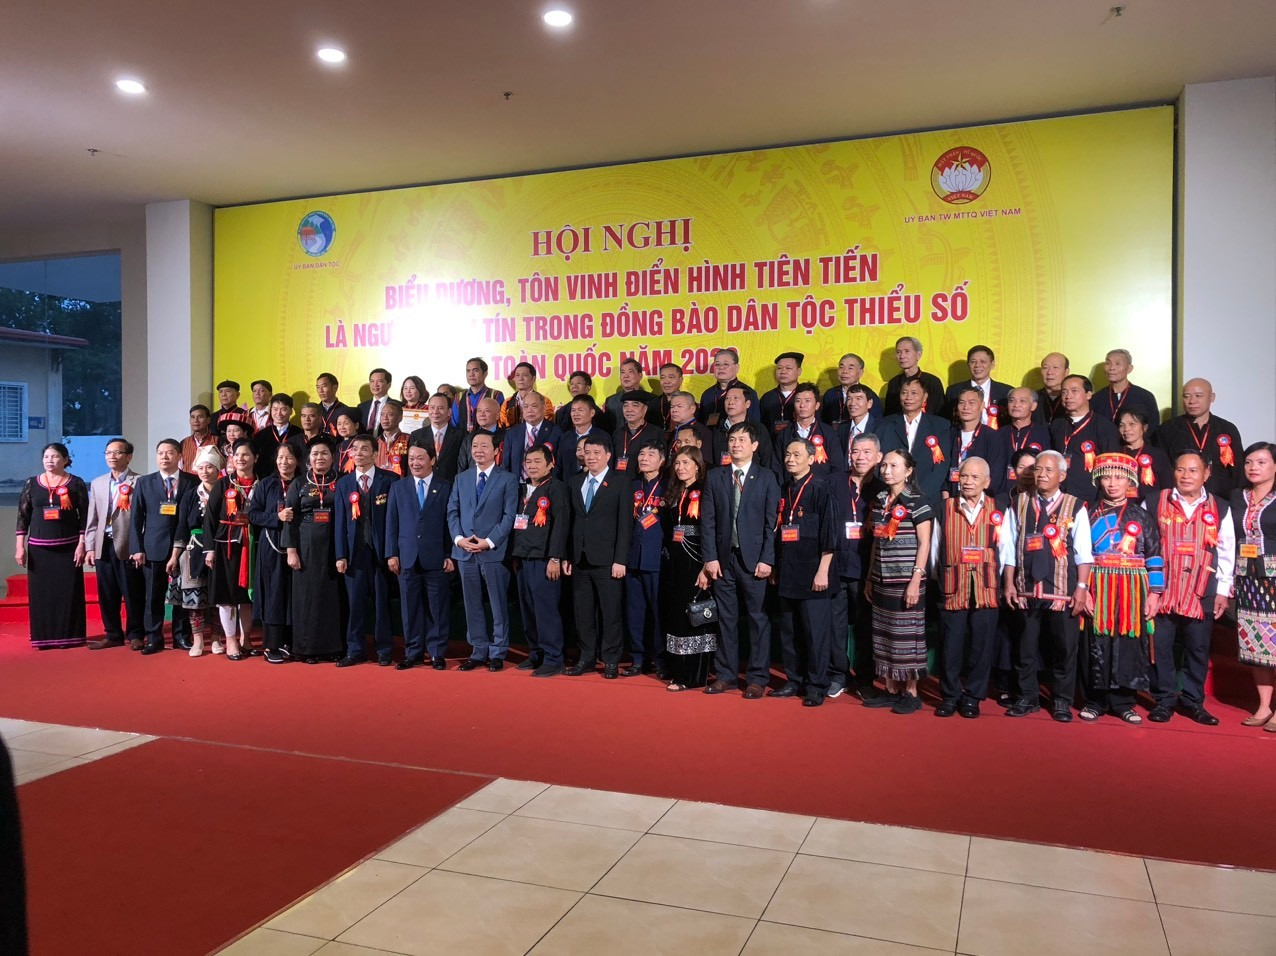 Đoàn Đại biểu người có uy tín tỉnh Quảng Ngãi tham dự Hội nghị biểu dương, tôn vinh điển hình tiên tiến là người có uy tín trong đồng bào dân tộc thiểu số toàn quốc năm 2023 tại Hà Nội